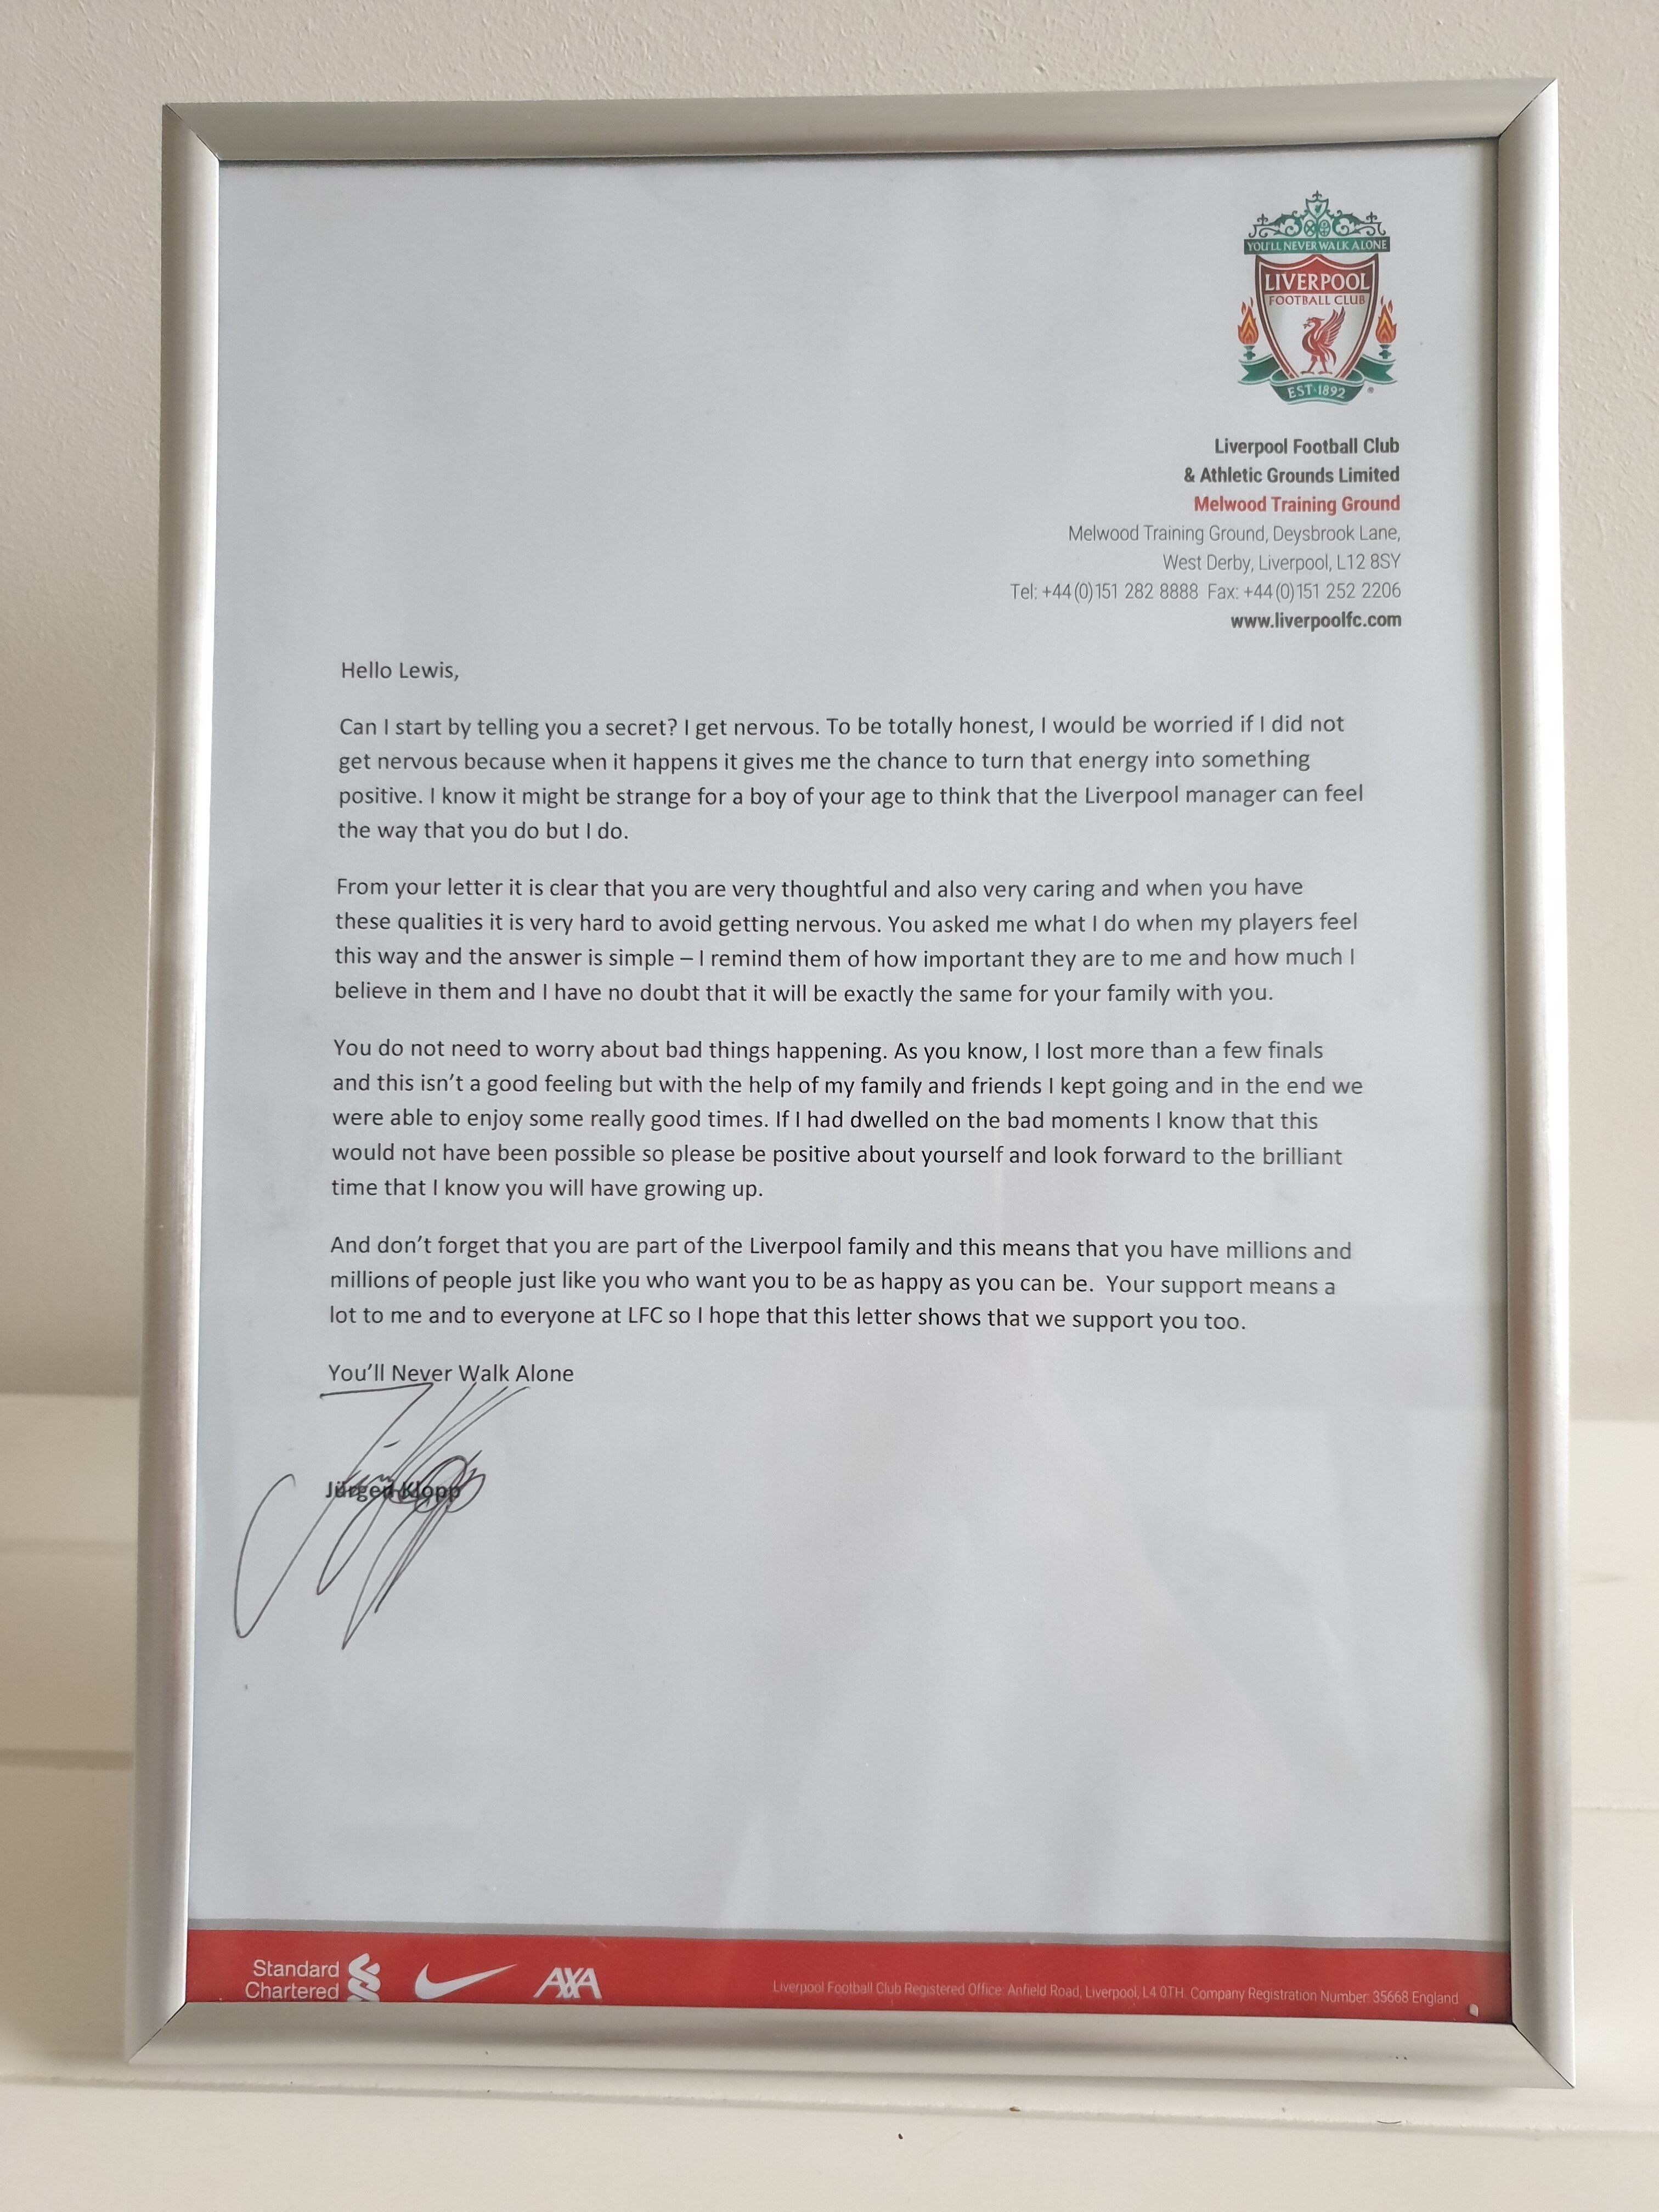 The framed letter from Jurgen Klopp to Lewis